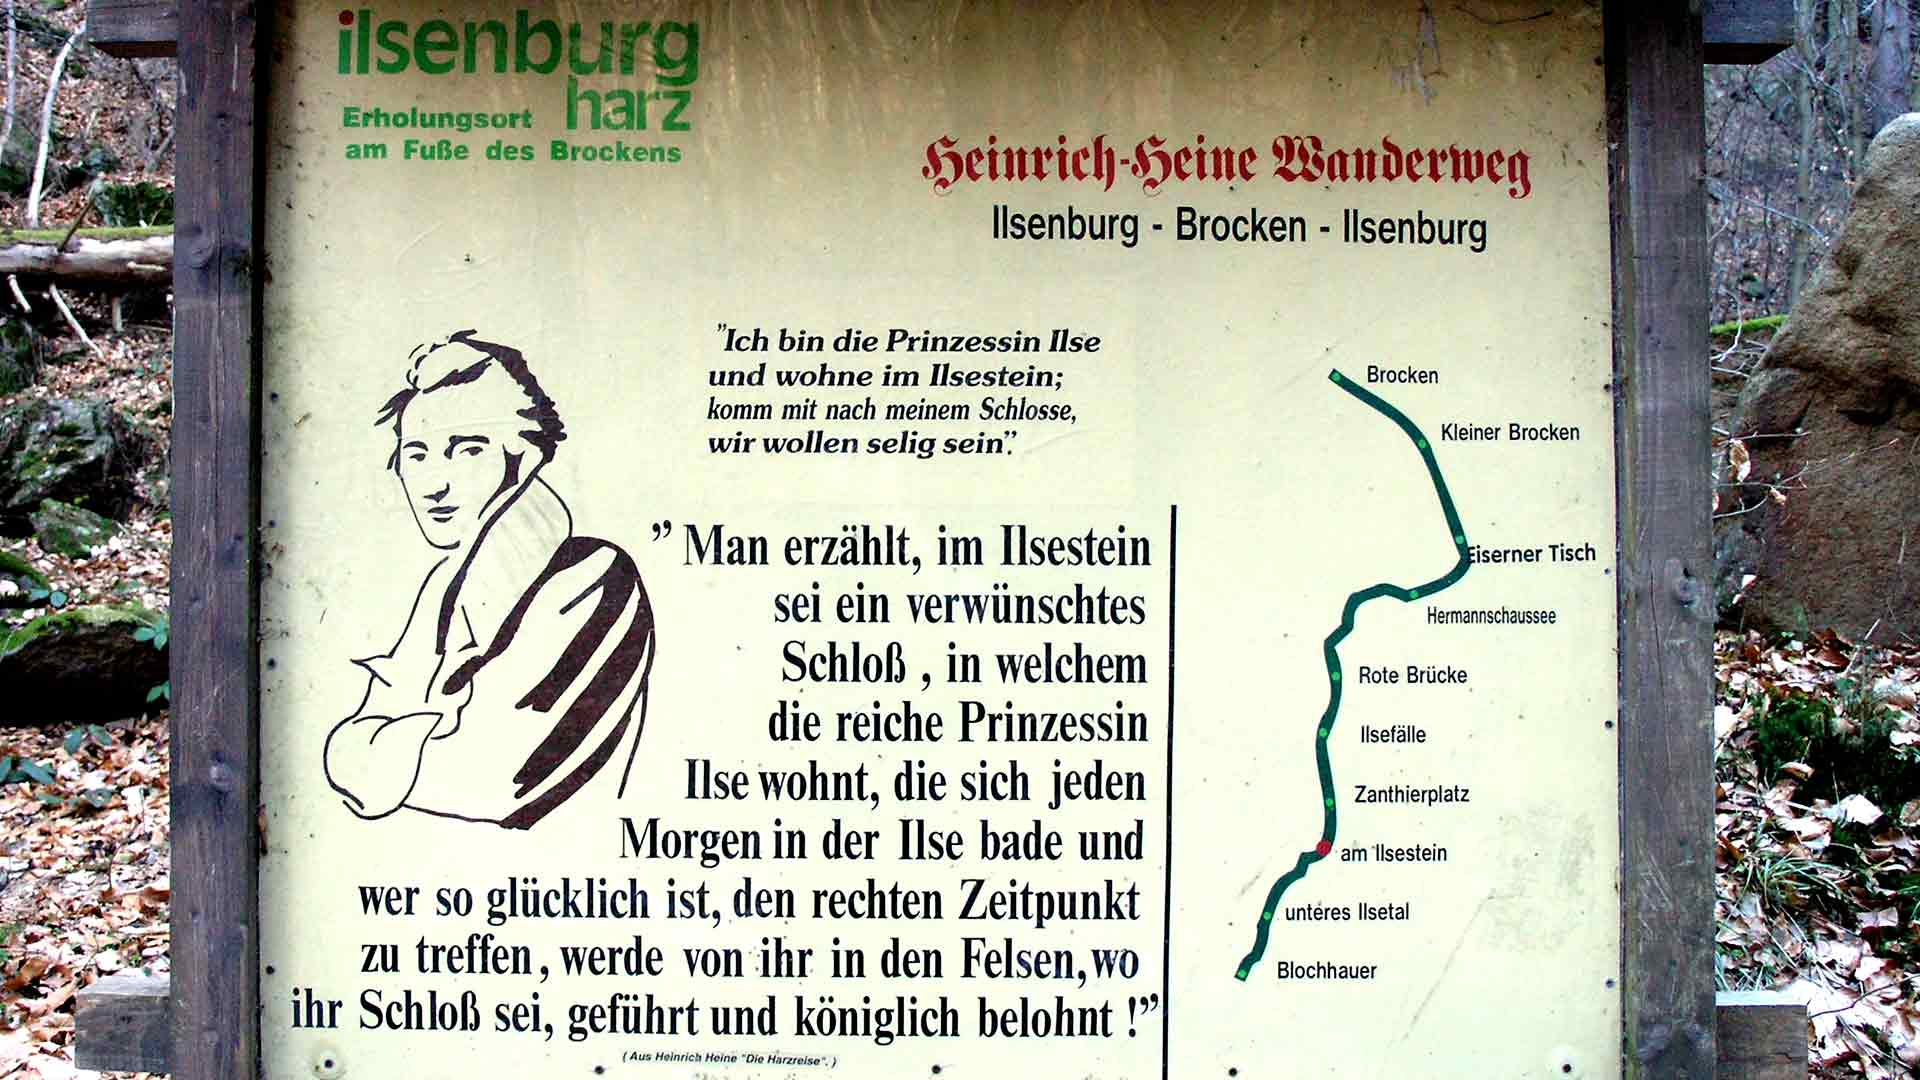 Heinrich-Heine-Wanderweg von Ilsenburg zum Brocken - Informattionstafel